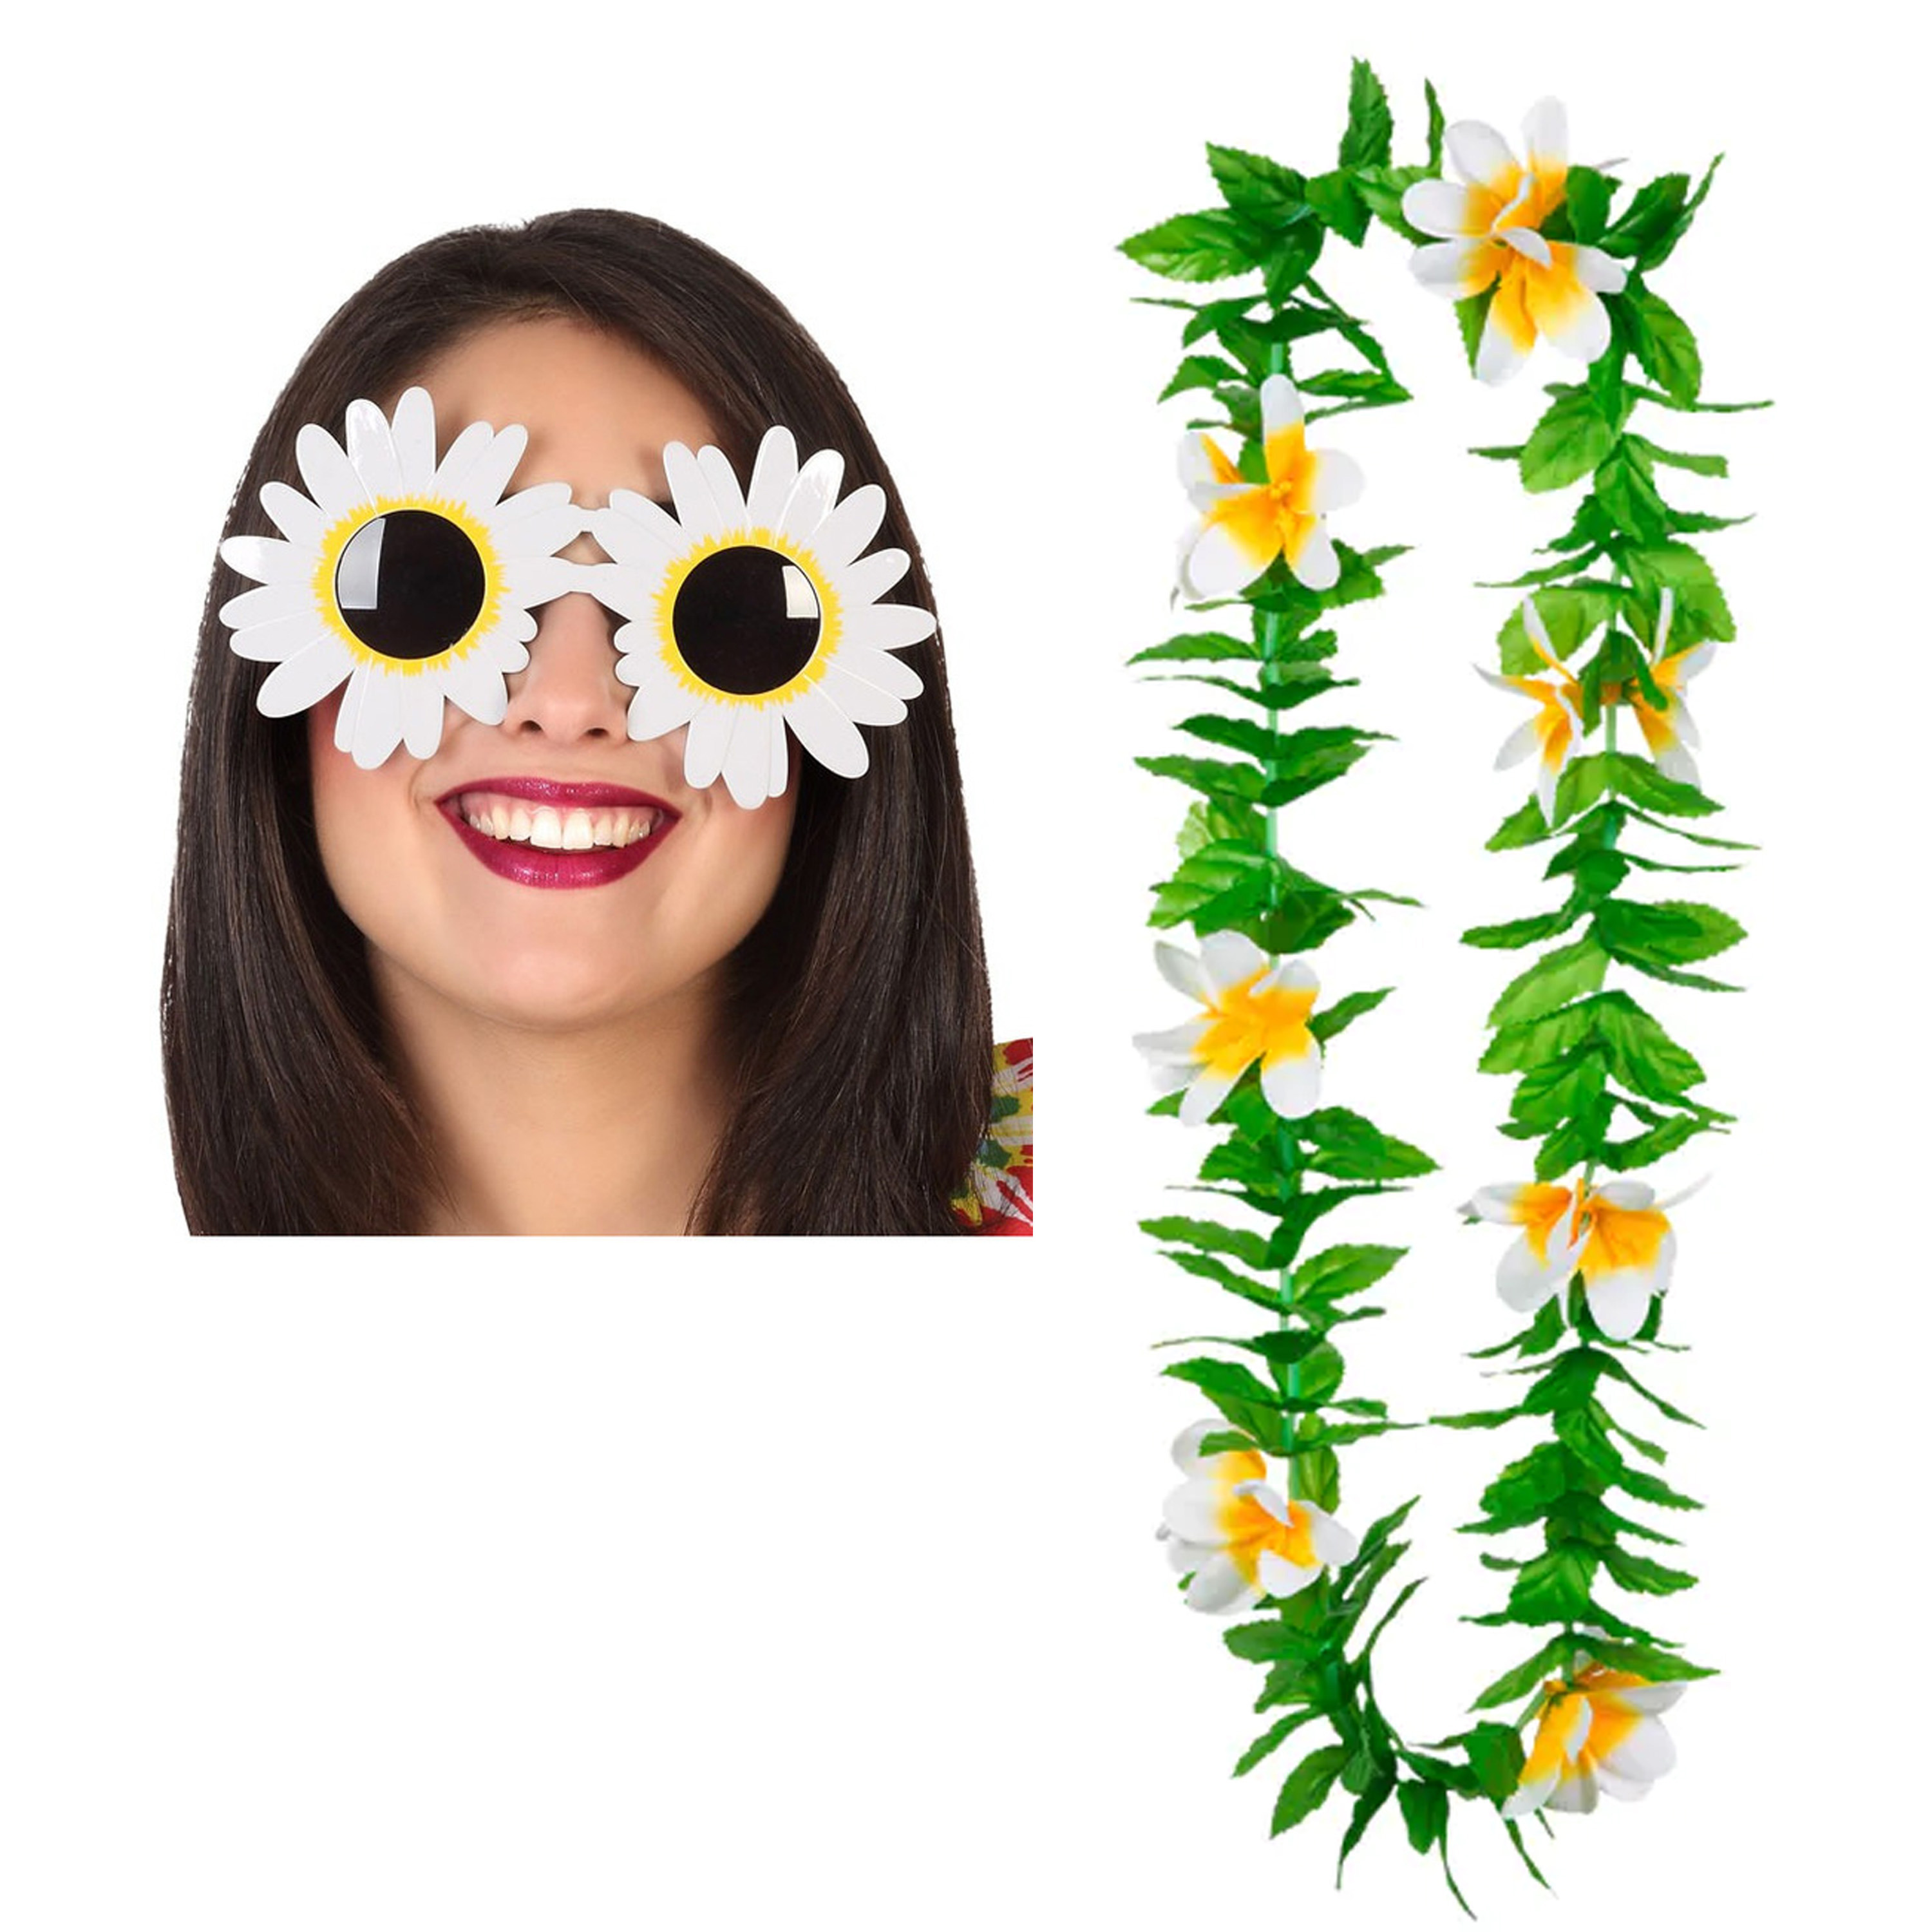 Tropische Hawaii party verkleed accessoires set bloemen zonnebril en bloemenkrans groen-wit